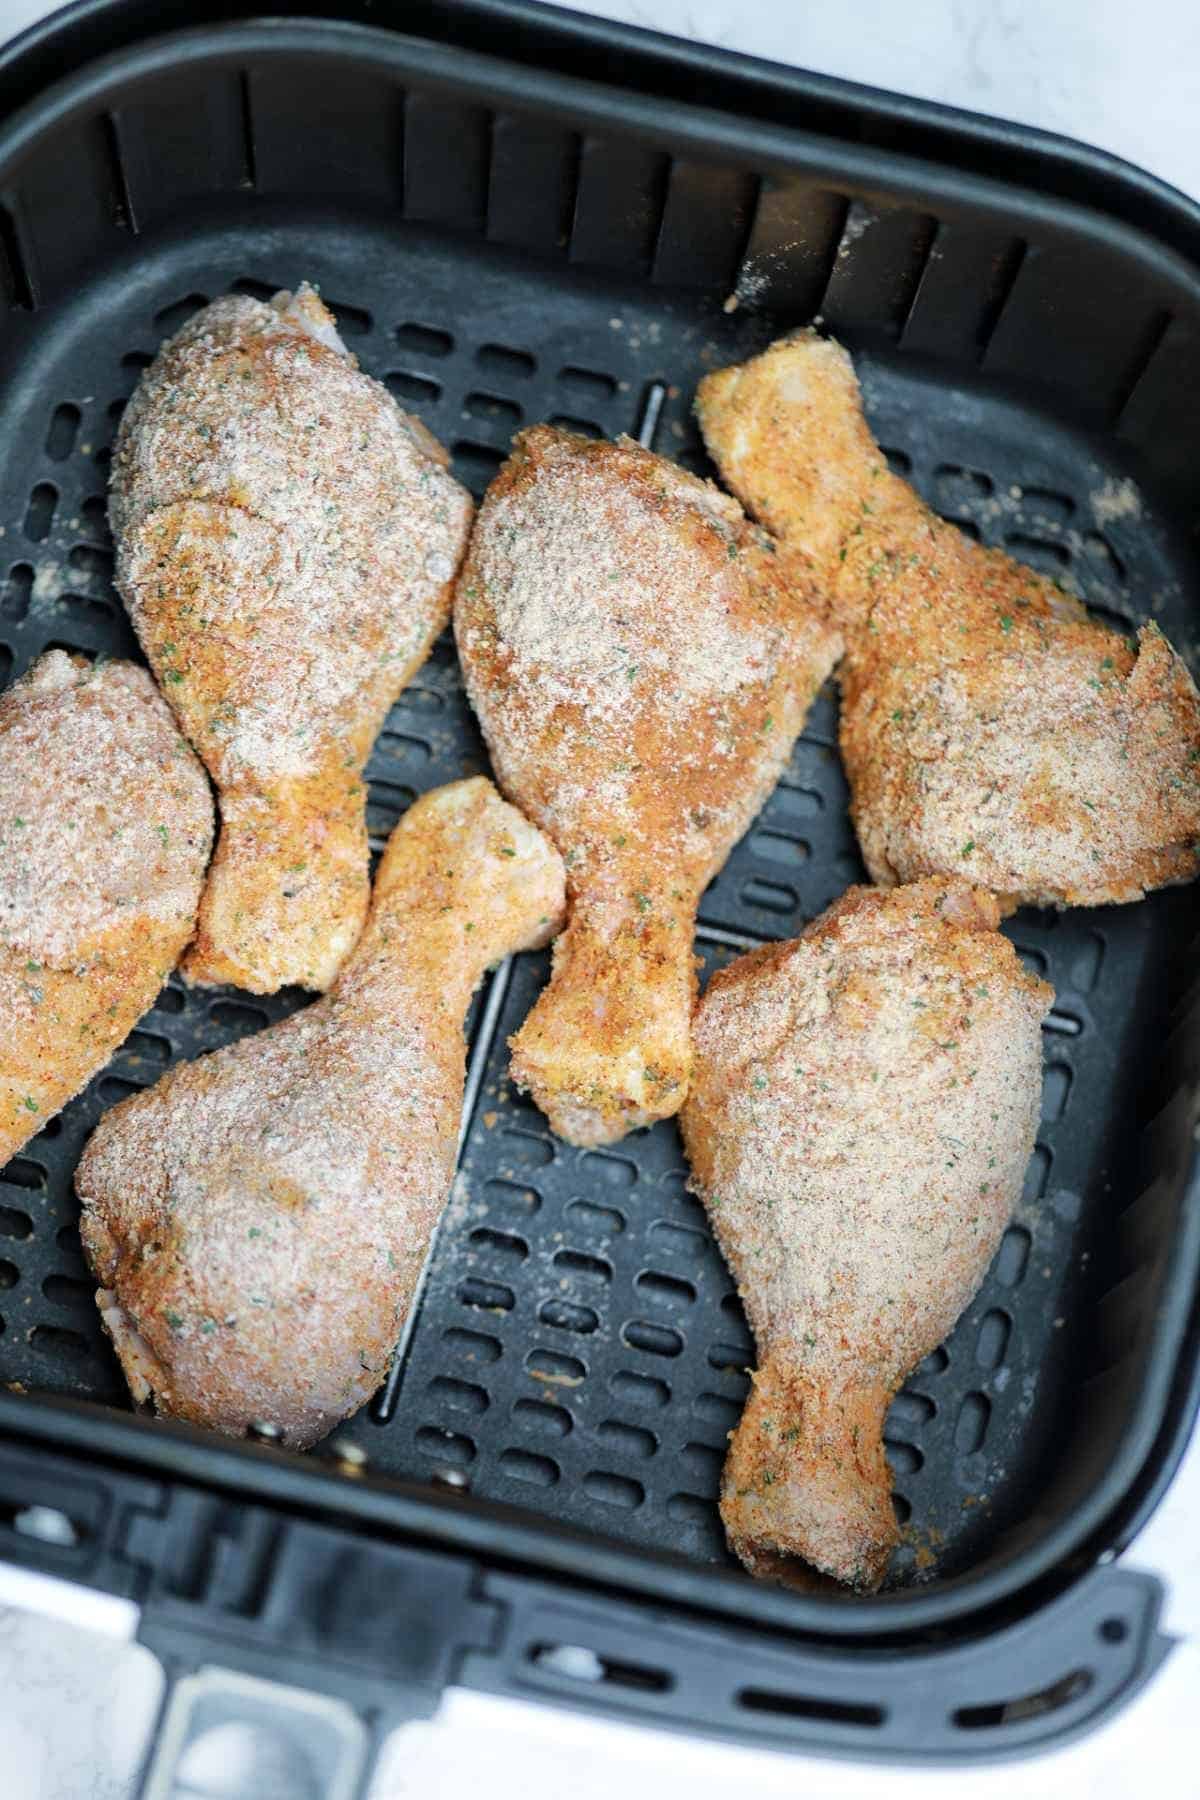 breaded chicken drumsticks in air fryer.